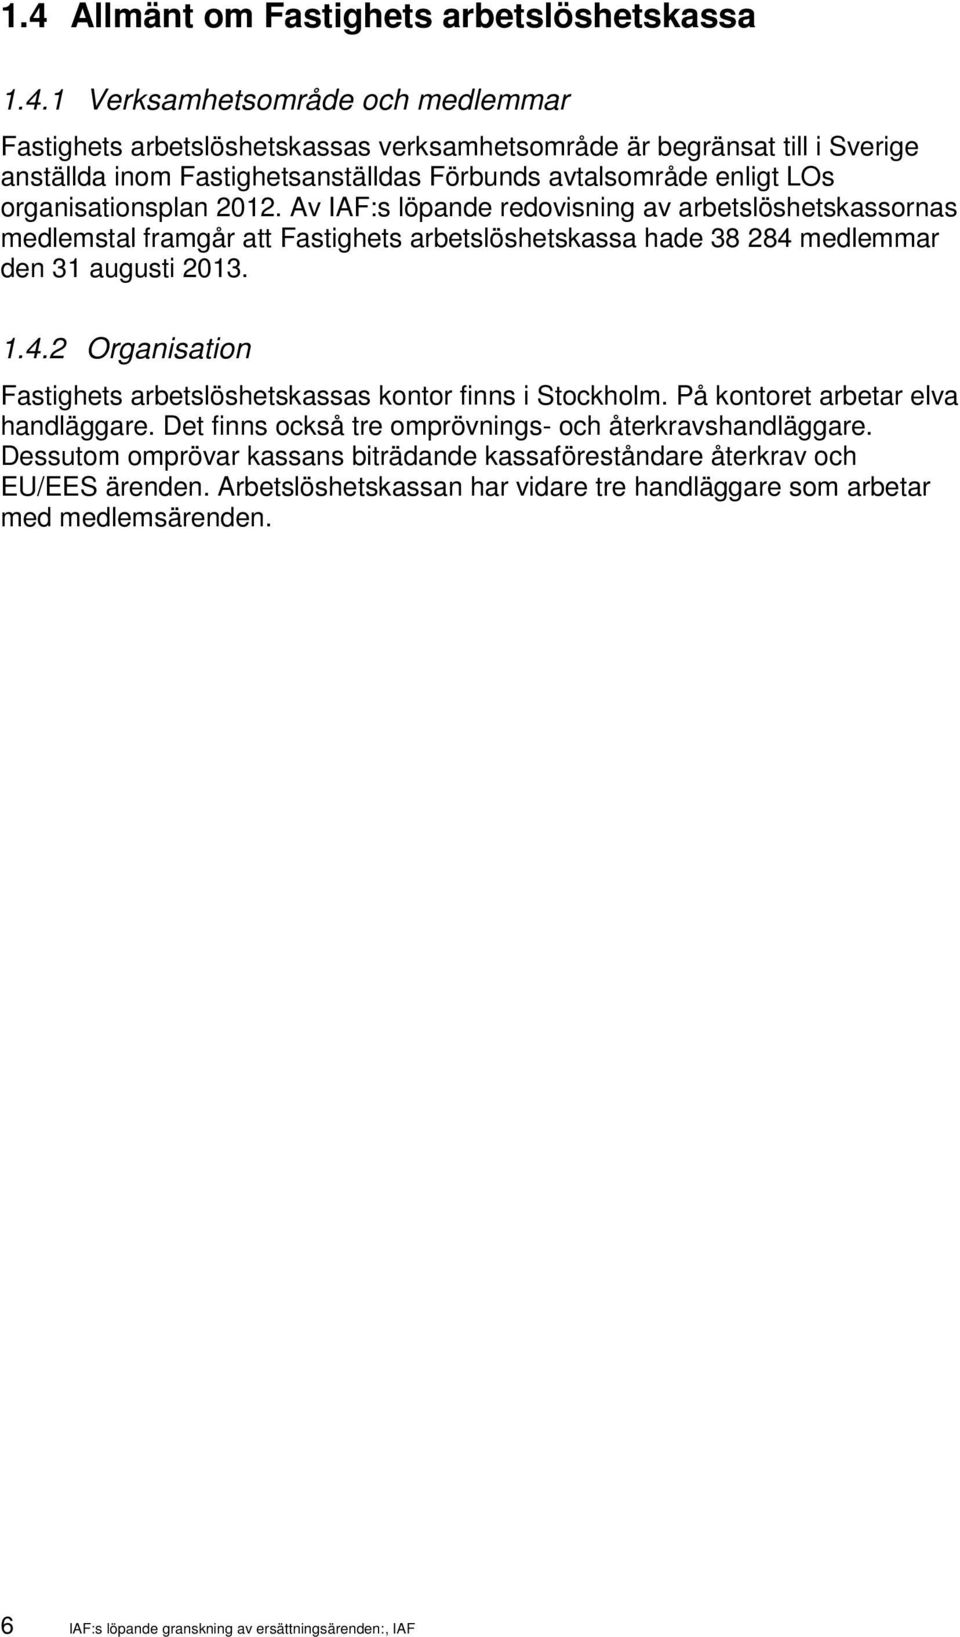 Av IAF:s löpande redovisning av arbetslöshetskassornas medlemstal framgår att Fastighets arbetslöshetskassa hade 38 284 medlemmar den 31 augusti 2013. 1.4.2 Organisation Fastighets arbetslöshetskassas kontor finns i Stockholm.